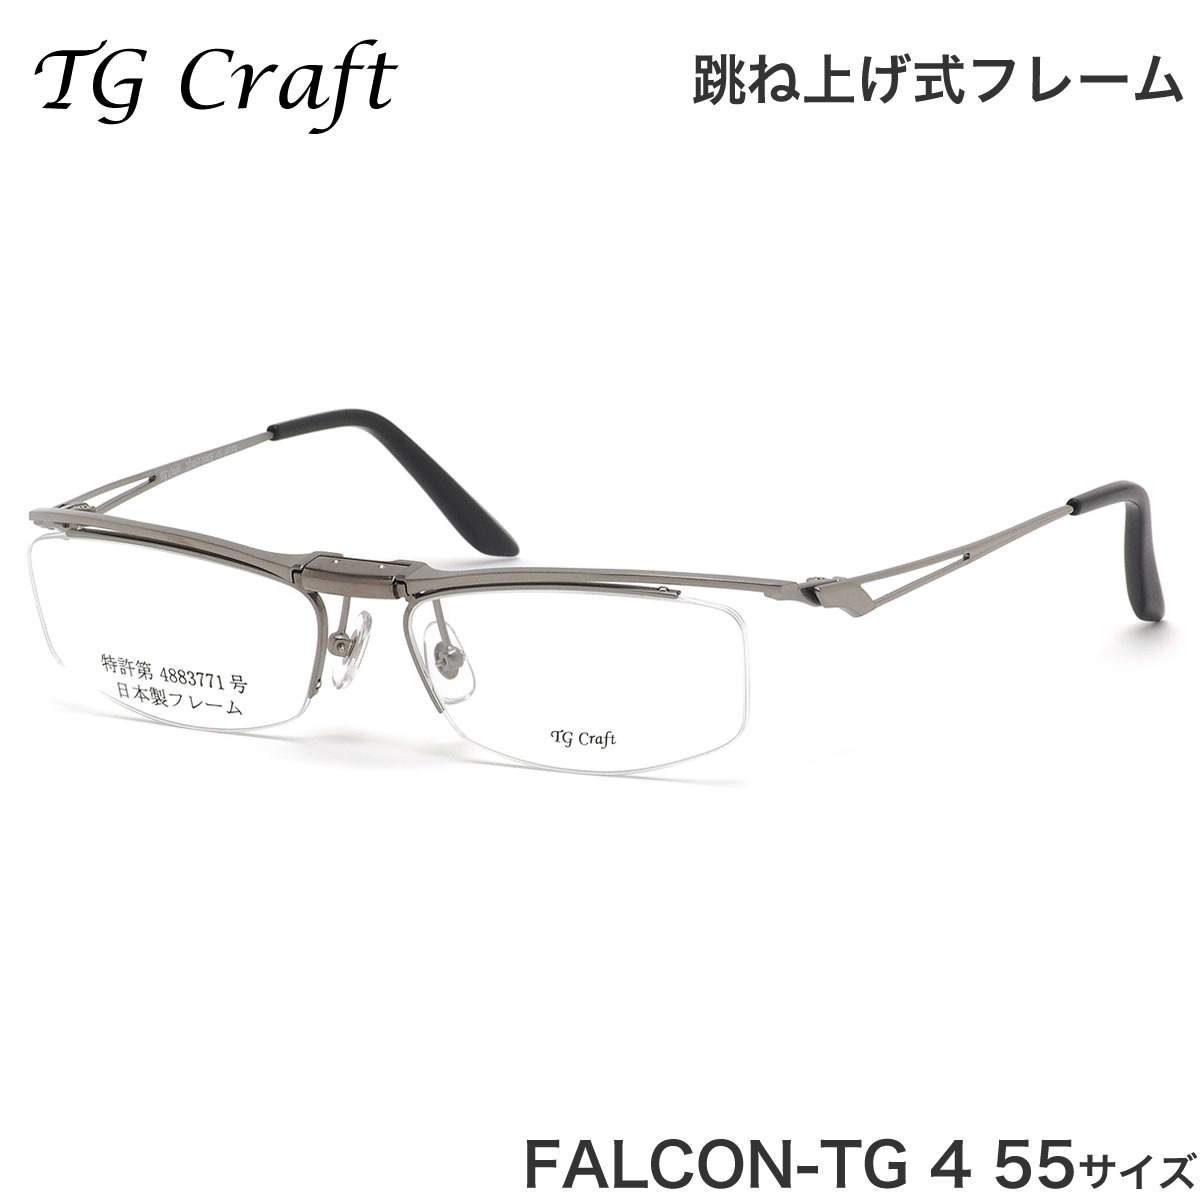 ティージークラフト TG Craft メガネ FALCON-TG 4 55サイズ Falcon-TG ファルコンTG Col.4 跳ね上げ式 日本製 スクエア チタン 軽量 ガンメタル ティージークラフトTGCraft メンズ レディース